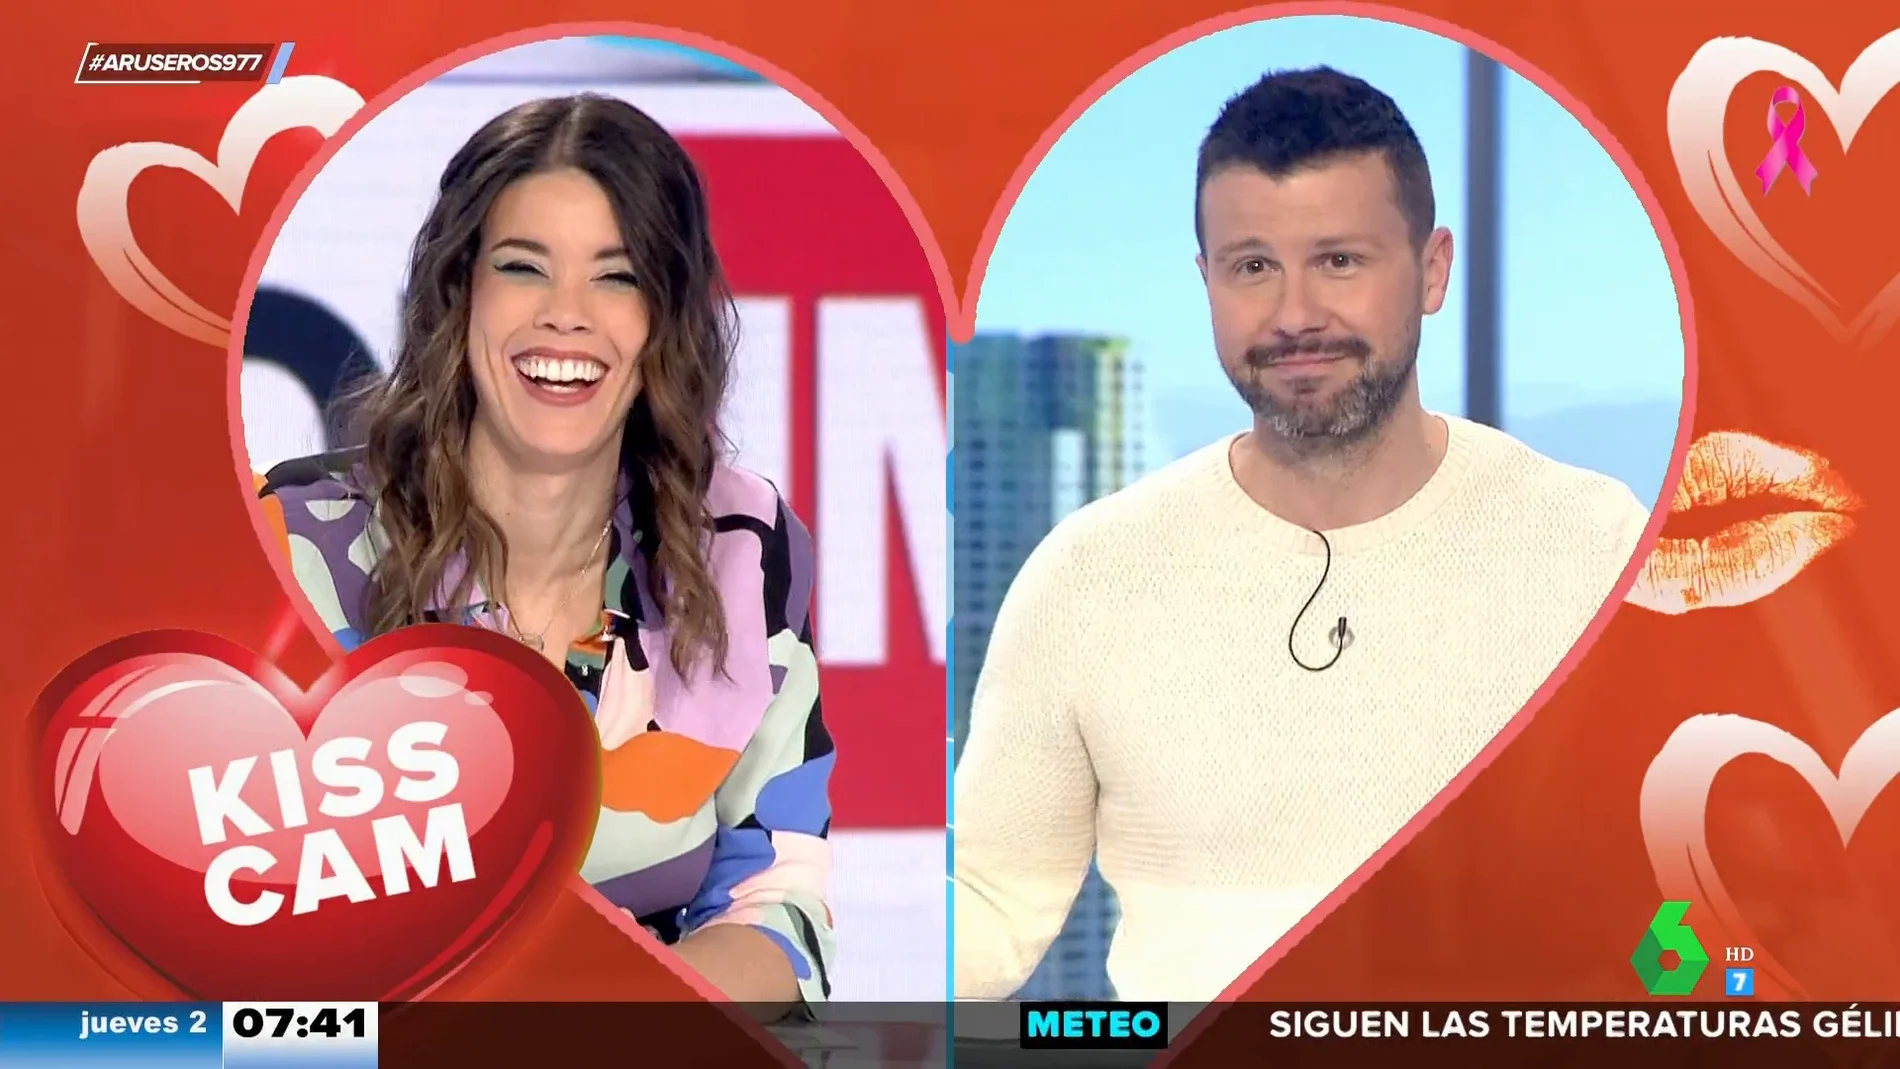 "Marc Redondo está más guapo con barba": las cosas que no hay que contar a la pareja según Alfonso Arús